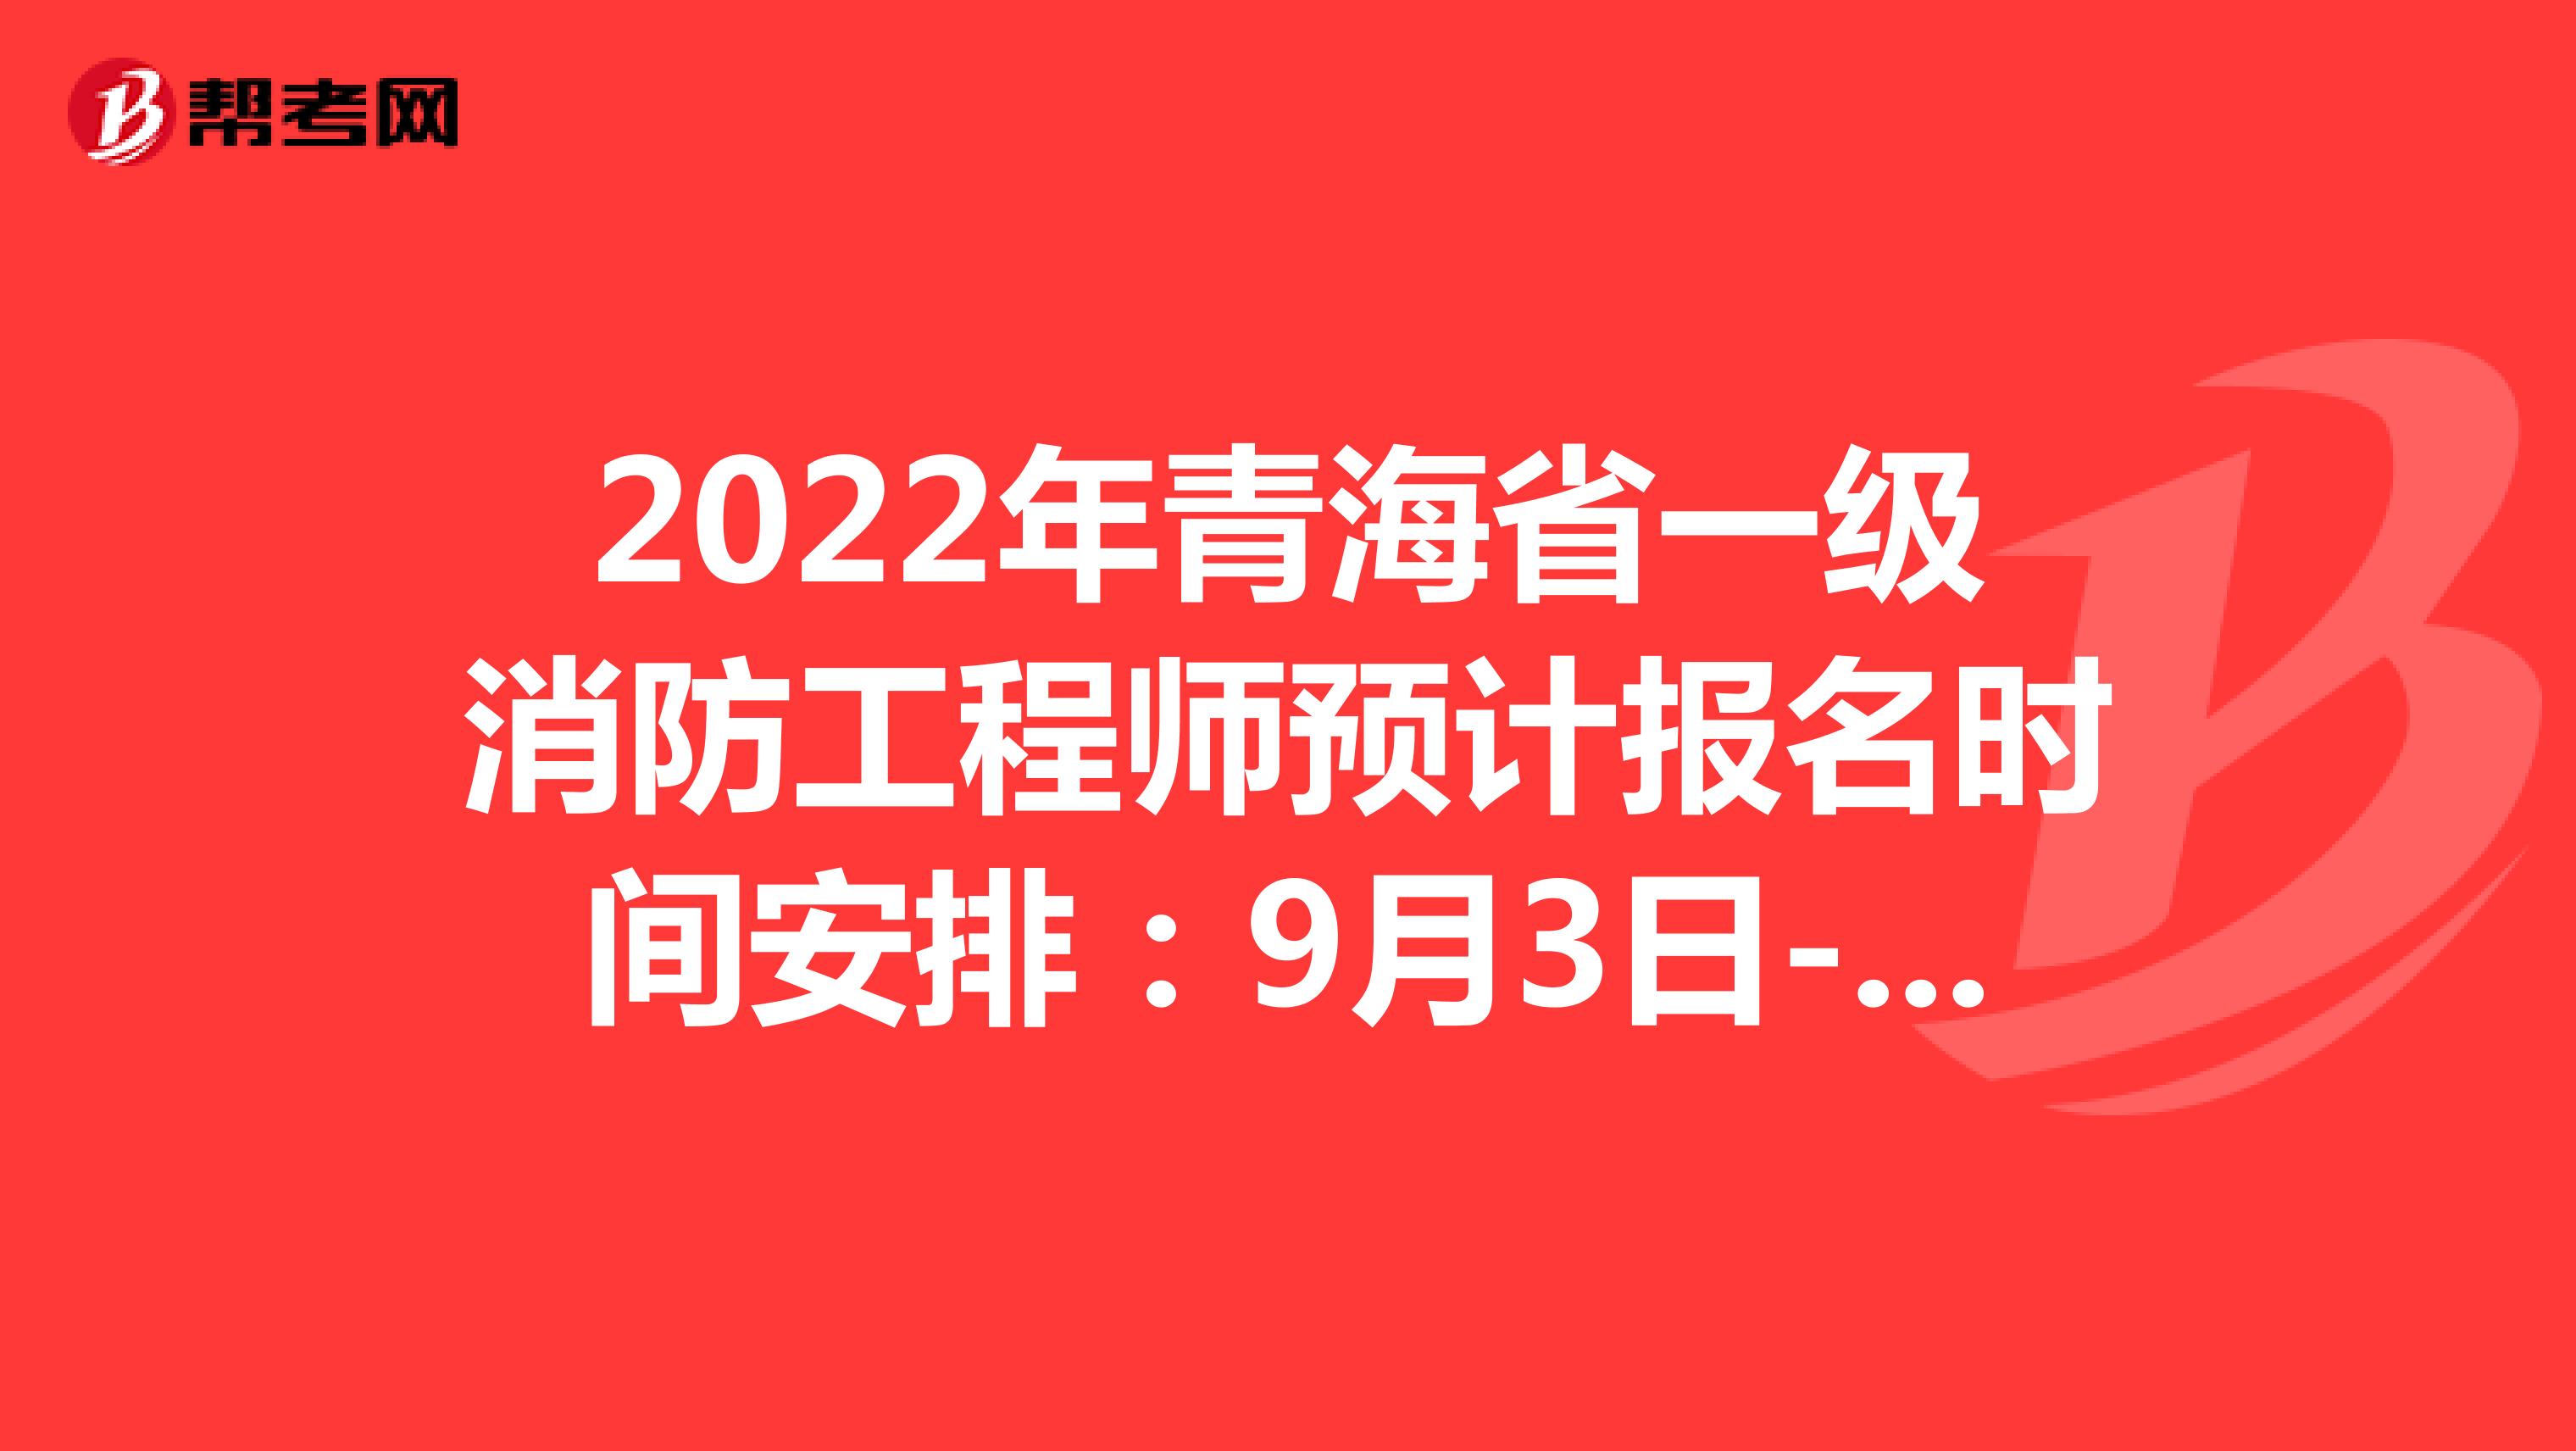 2022年青海省一级消防工程师预计报名时间安排：9月3日-9月13日